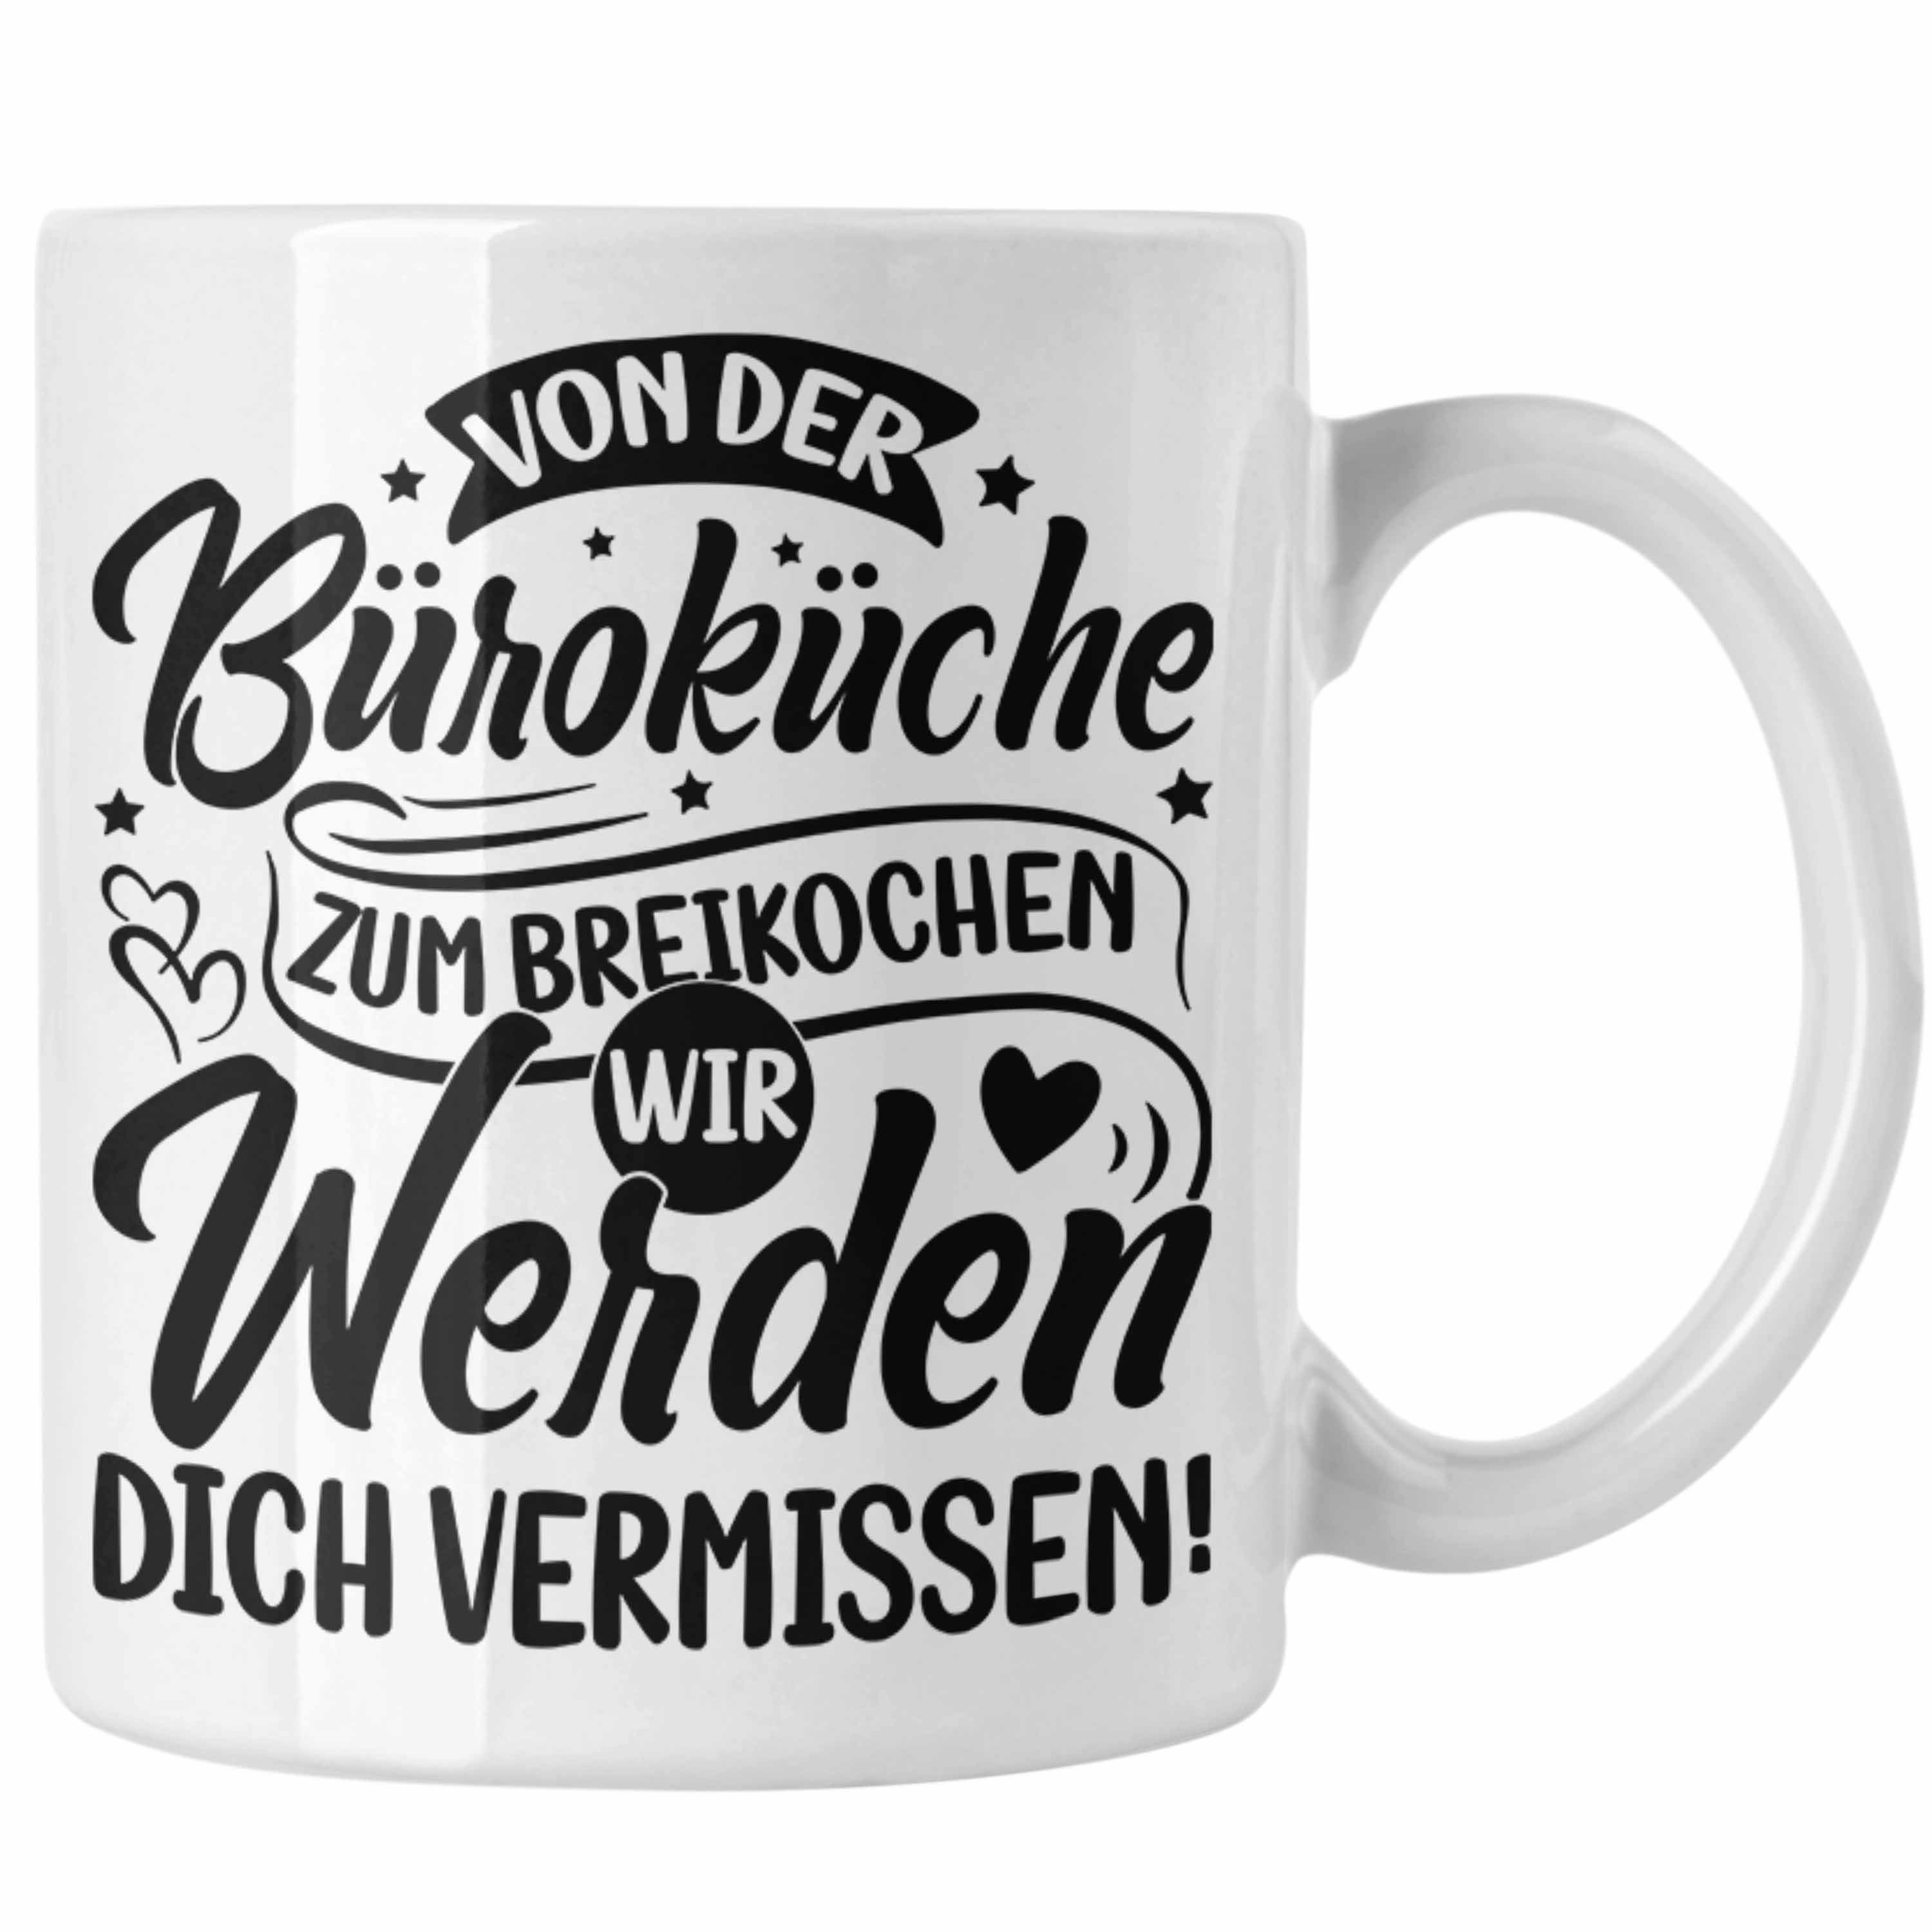 Trendation Tasse Mutterschutz Tasse Geschenk Abschied Mutterschutz Kaffeetasse Kollegi Weiss